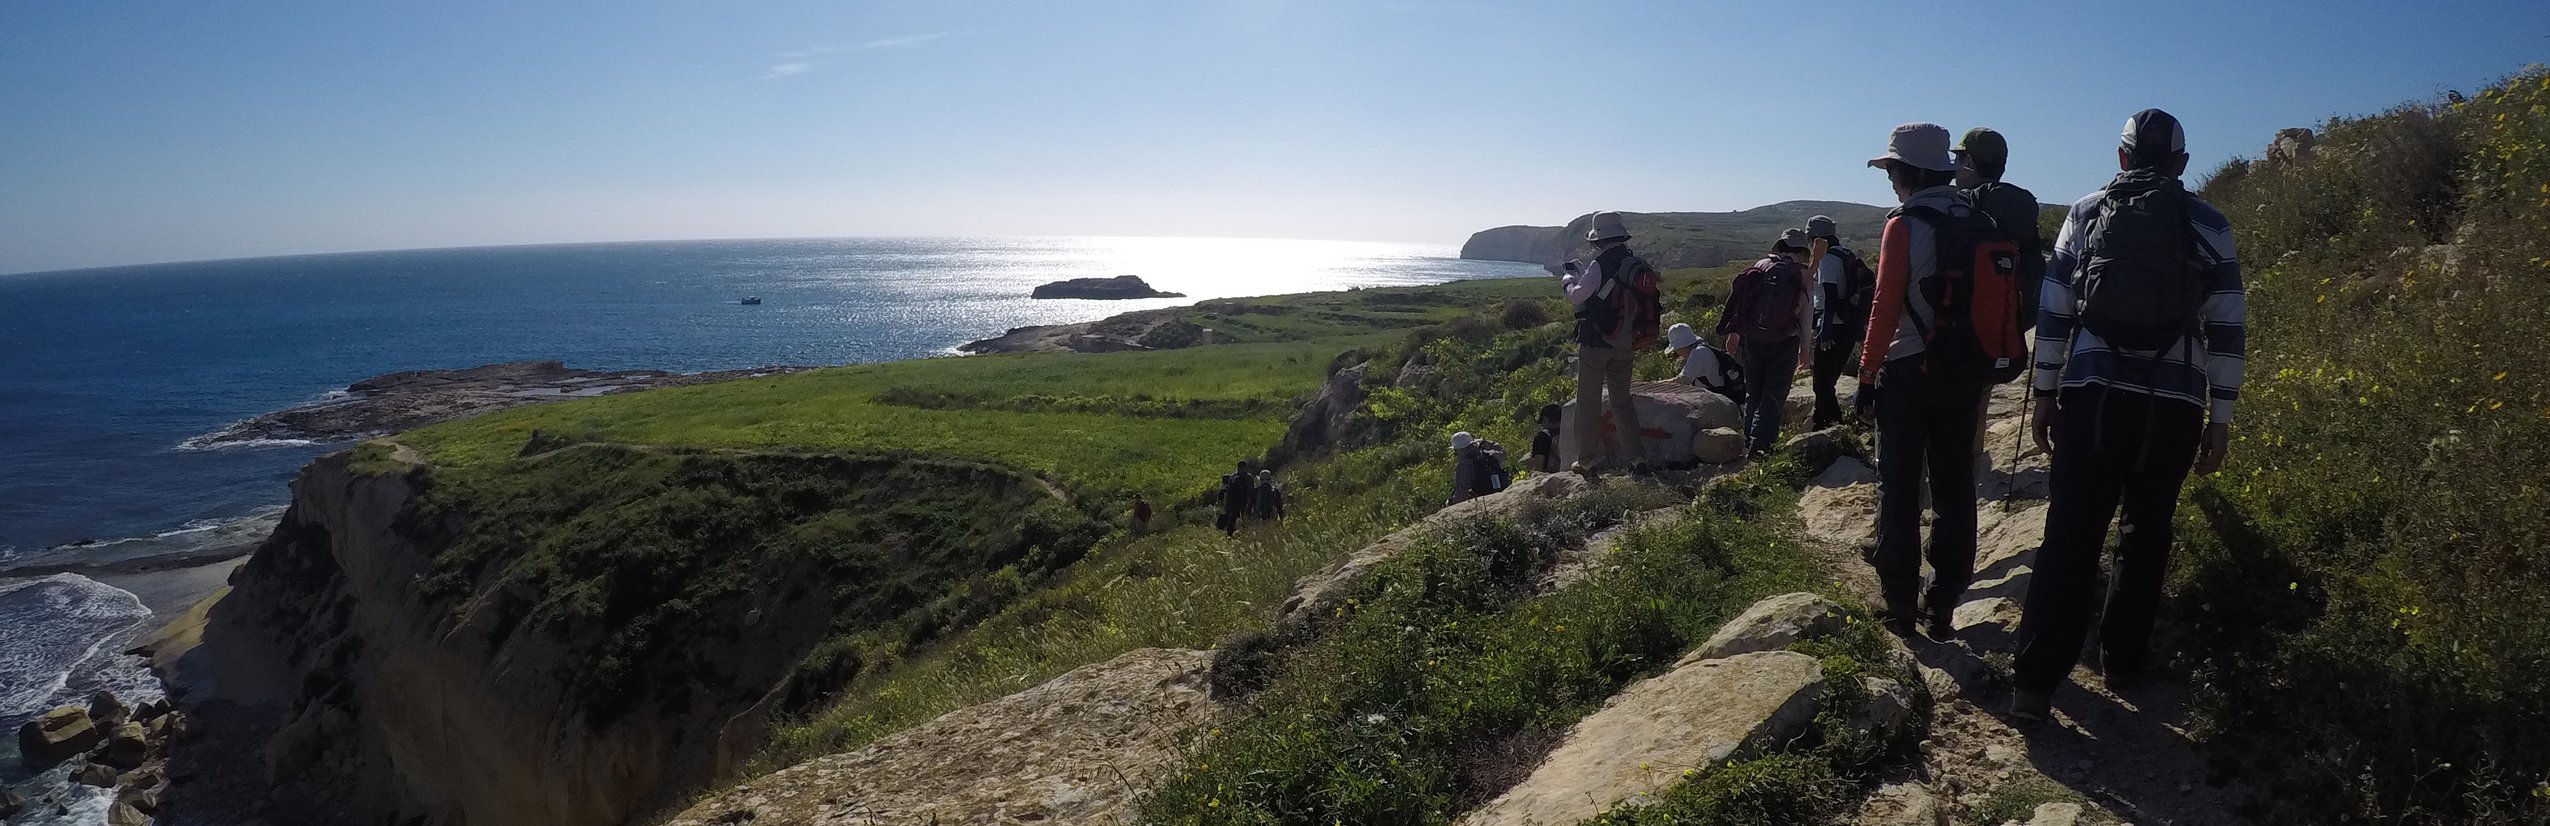 Familienurlaub Malta - Küste Wanderung